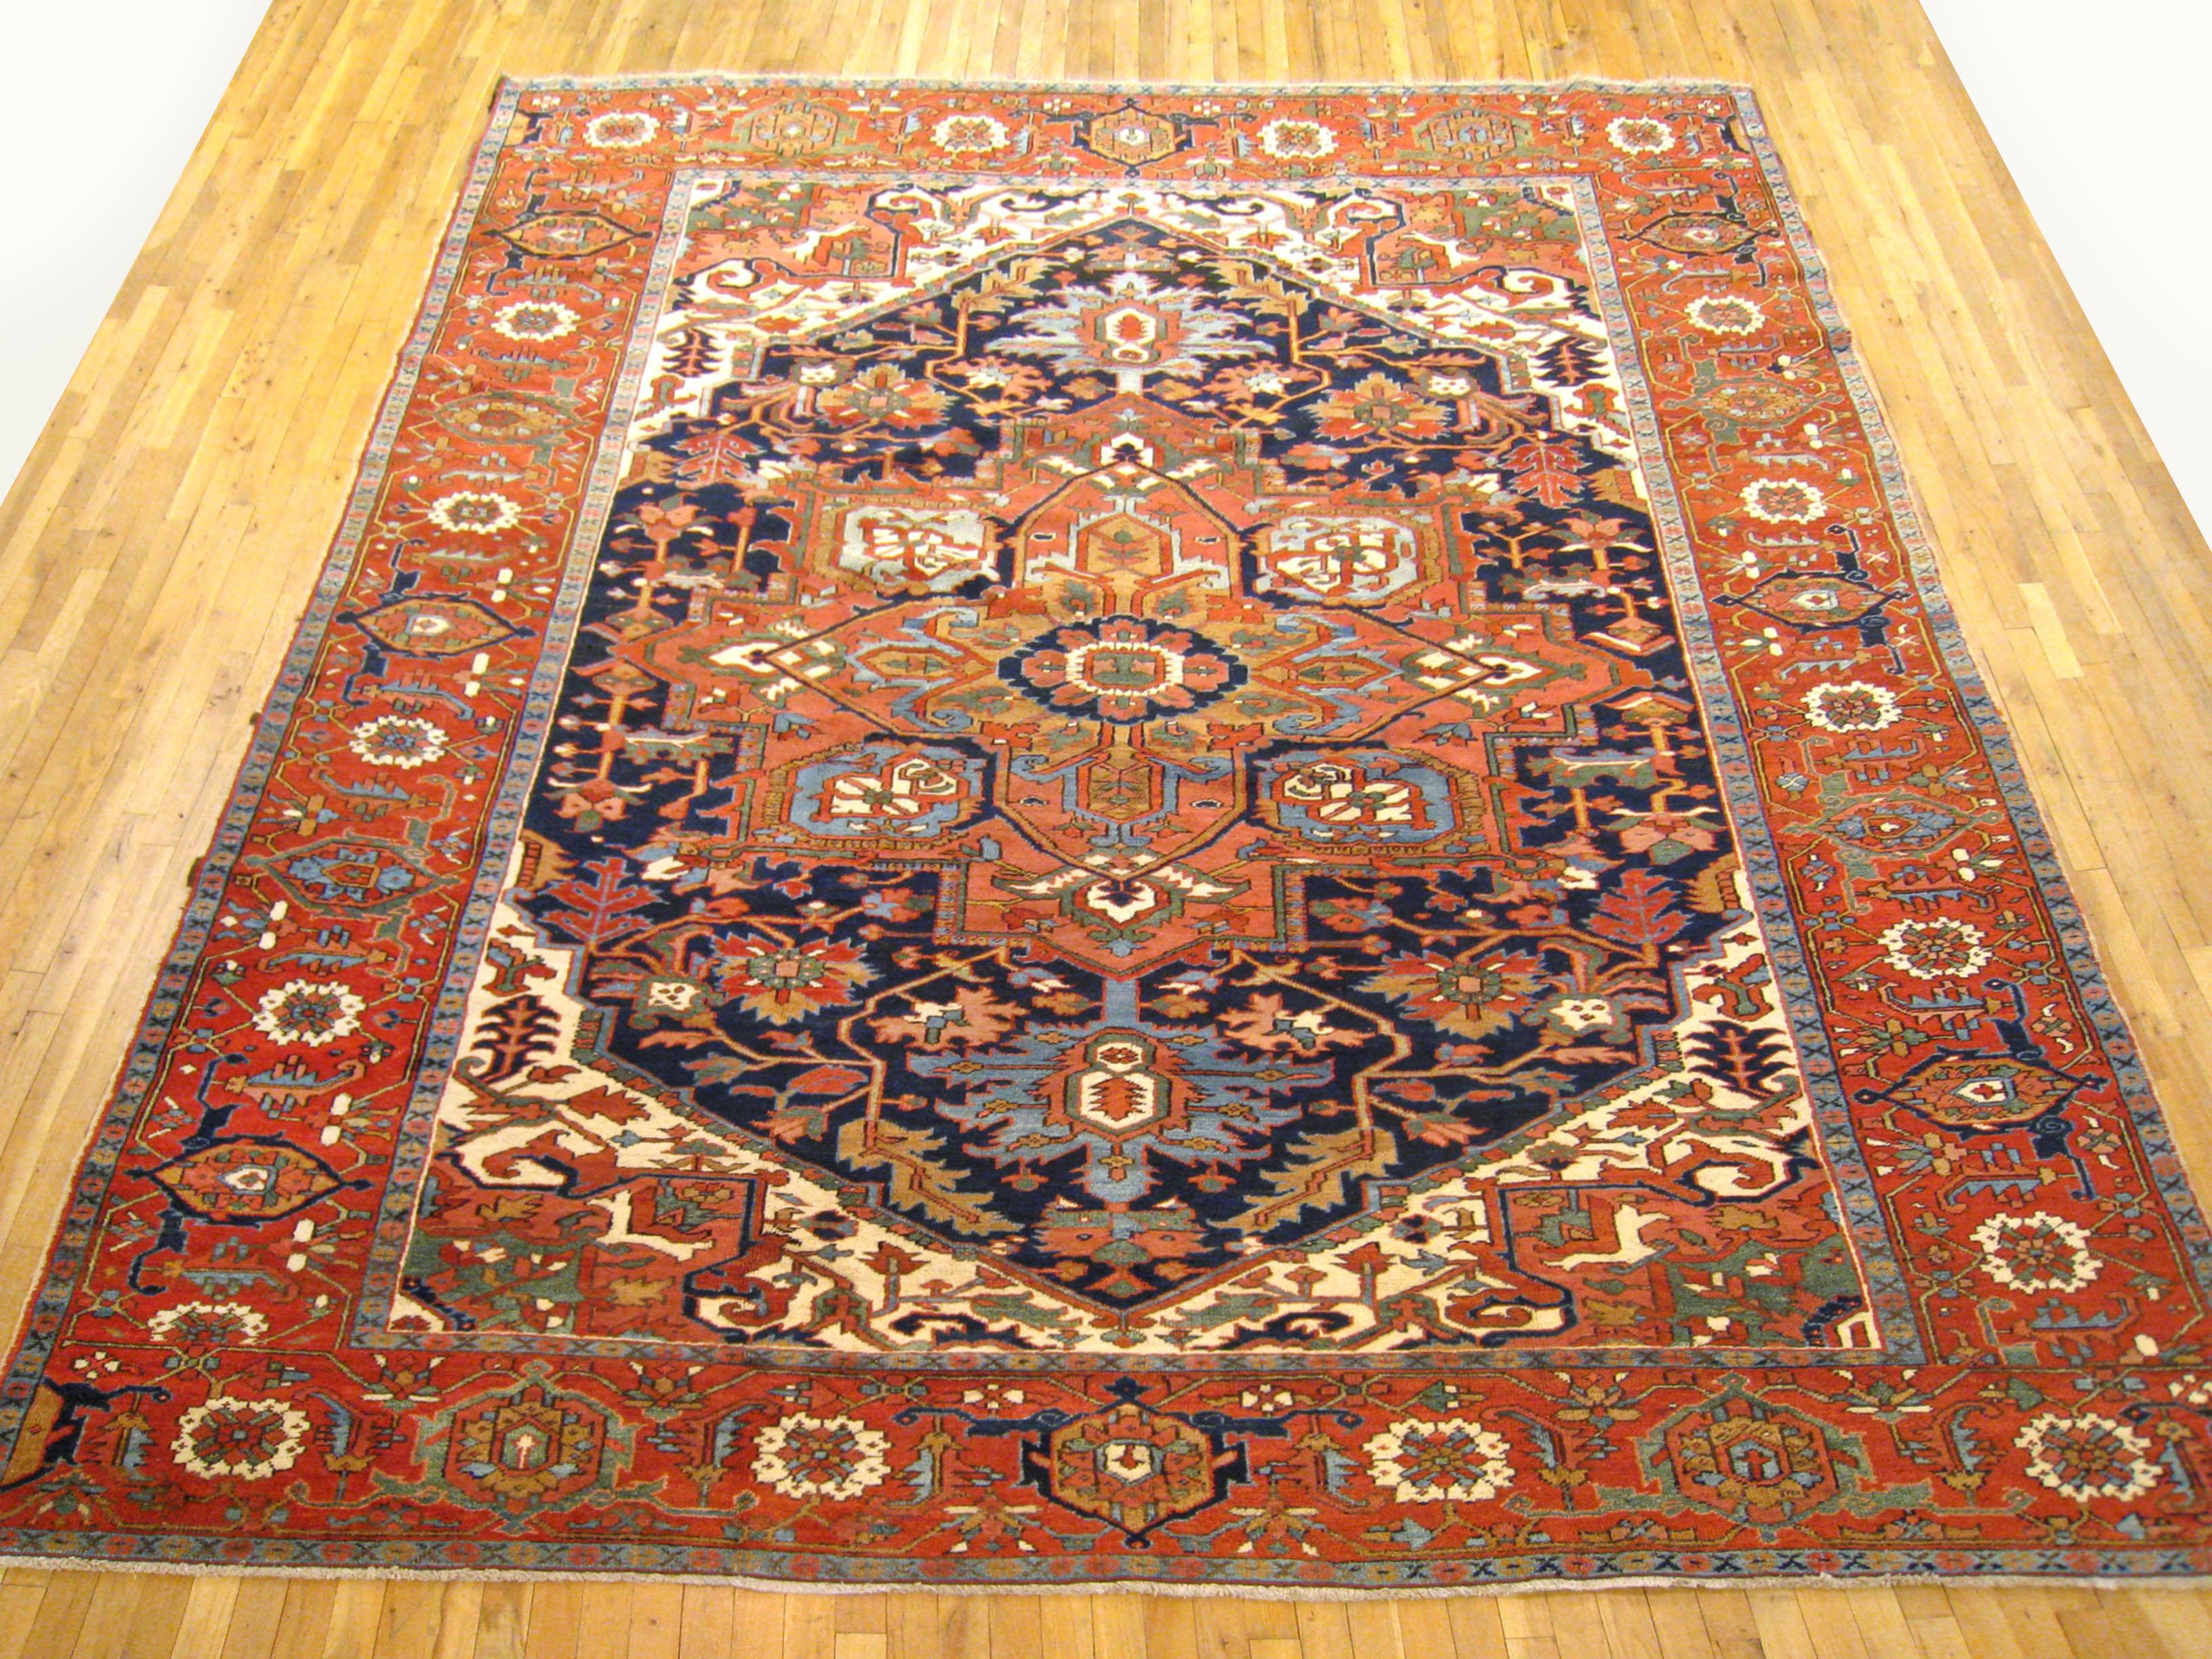 Antique Persian Serapi Oriental rug, in Room size

An antique Persian Serapi oriental rug, size 12'7